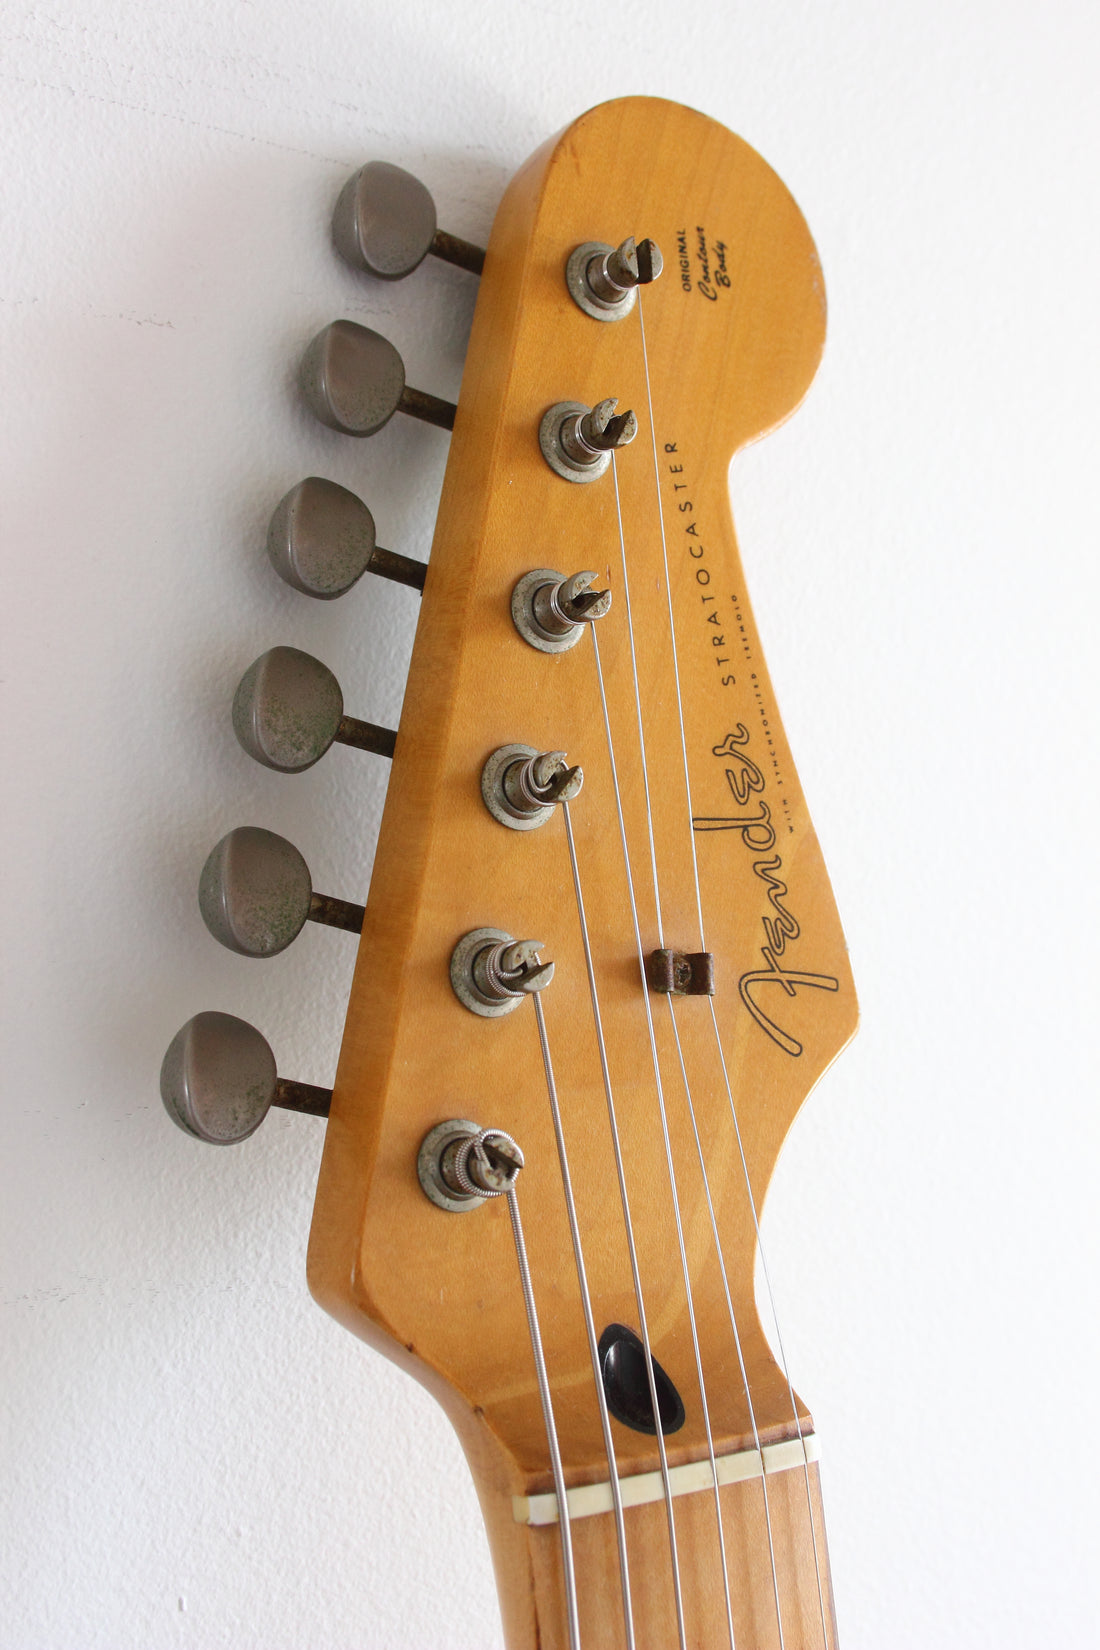 Fender Stratocaster '57 Reissue Modded Black 1993/4